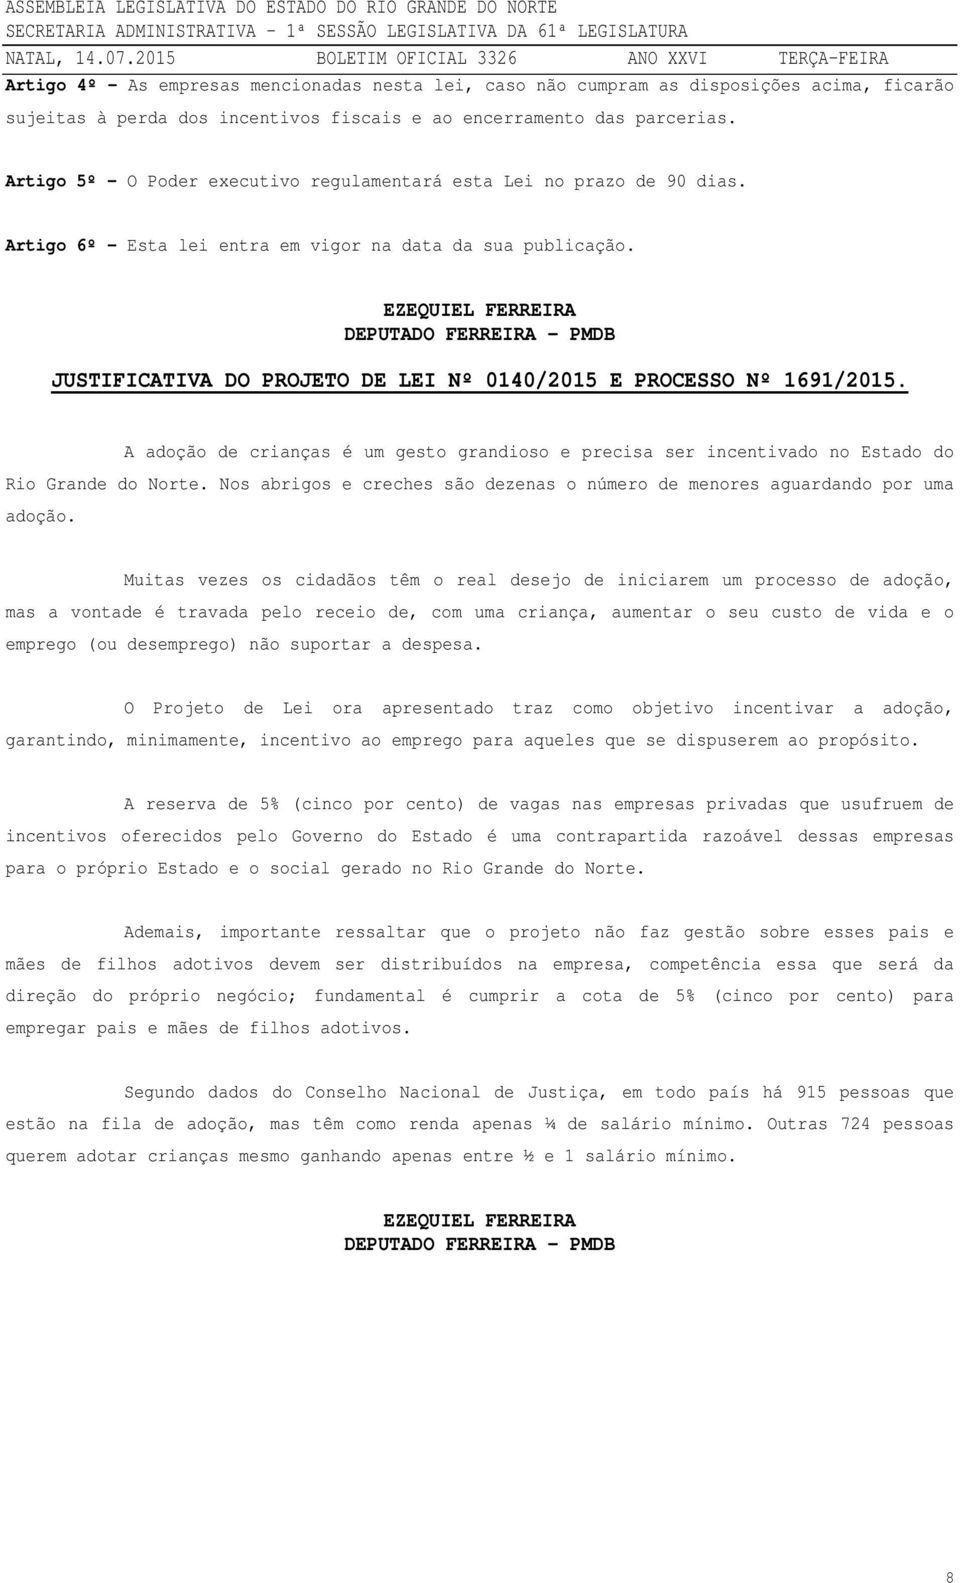 EZEQUIEL FERREIRA DEPUTADO FERREIRA - PMDB JUSTIFICATIVA DO PROJETO DE LEI Nº 0140/2015 E PROCESSO Nº 1691/2015.